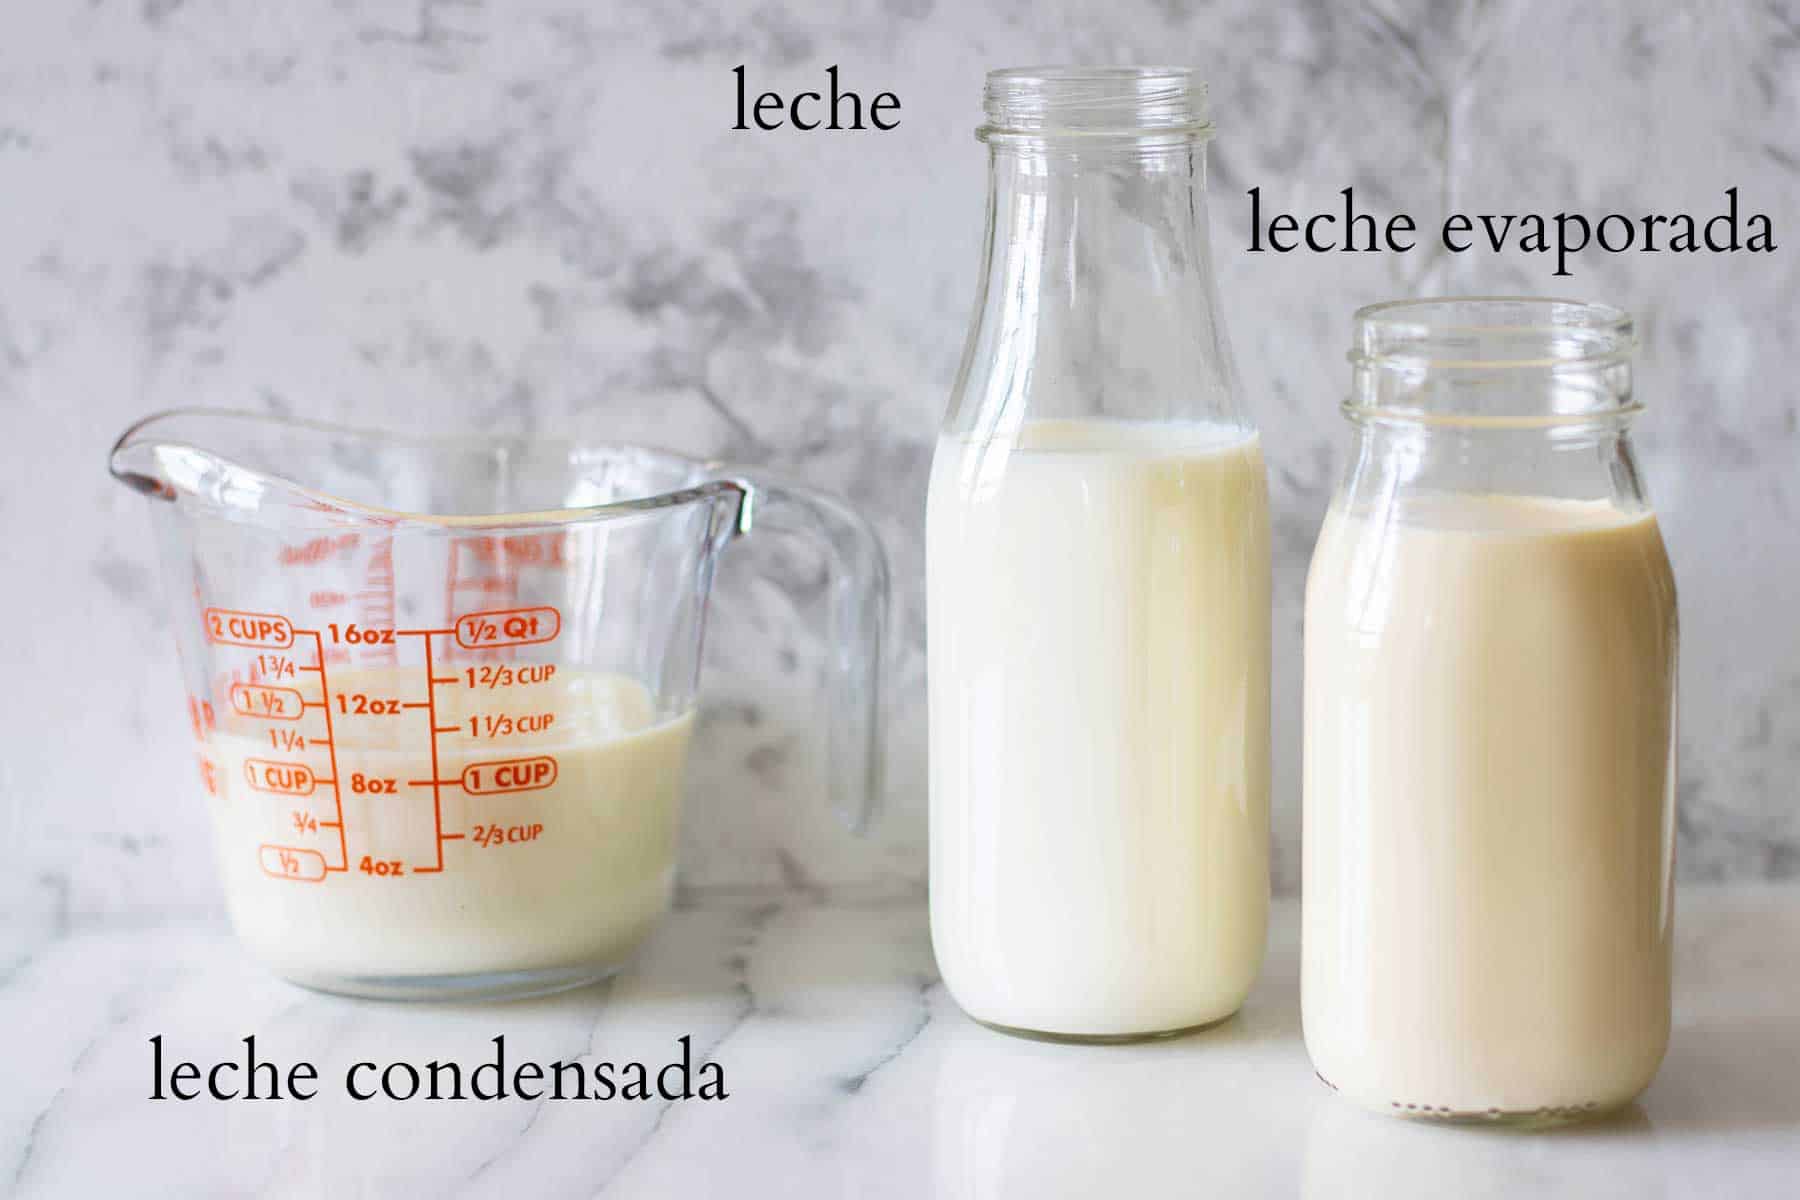 leches necesarias para hacer la leche para un tres leches de limon.